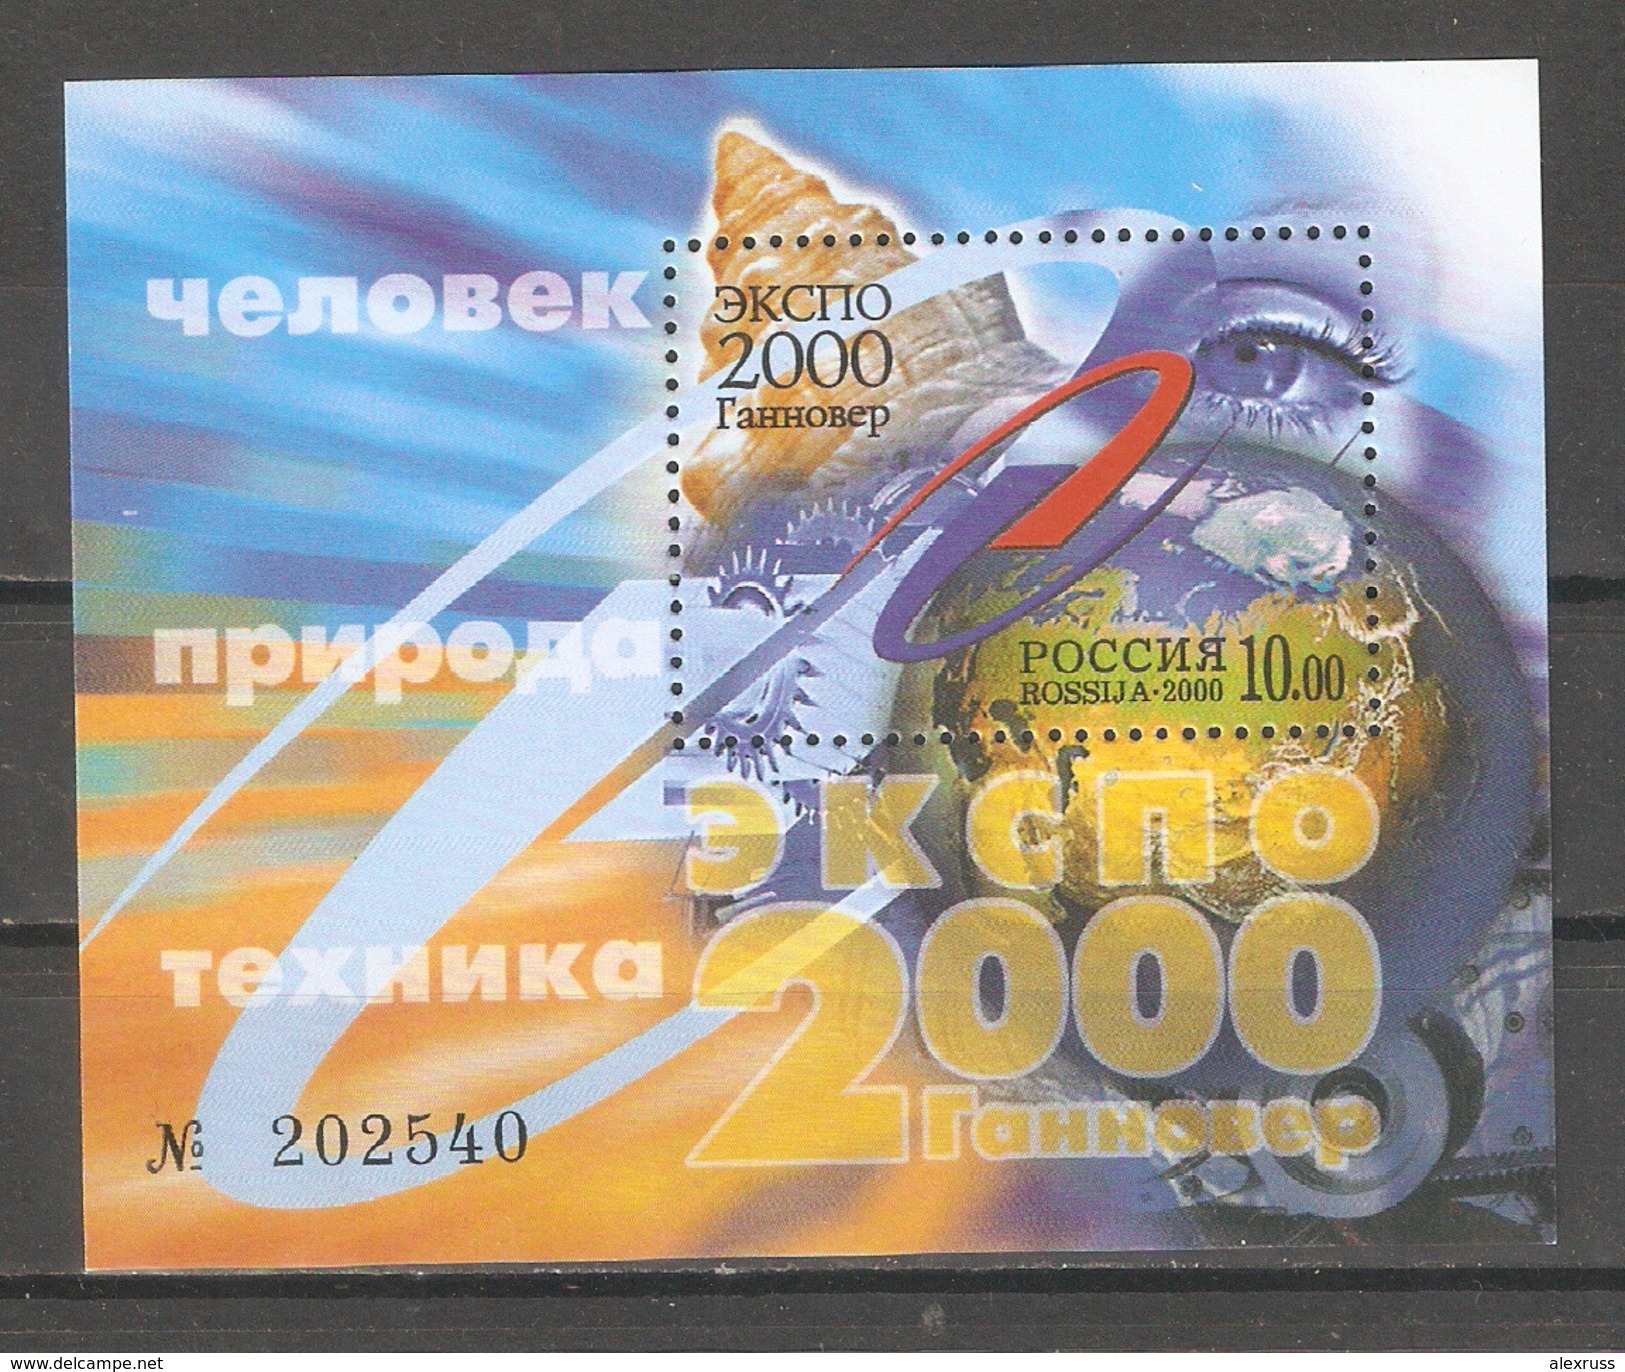 Russia 2000,Souvenir Sheet,EXPO 2000 Hannover,Sc 6590,VF MNH** - 2000 – Hannover (Alemania)